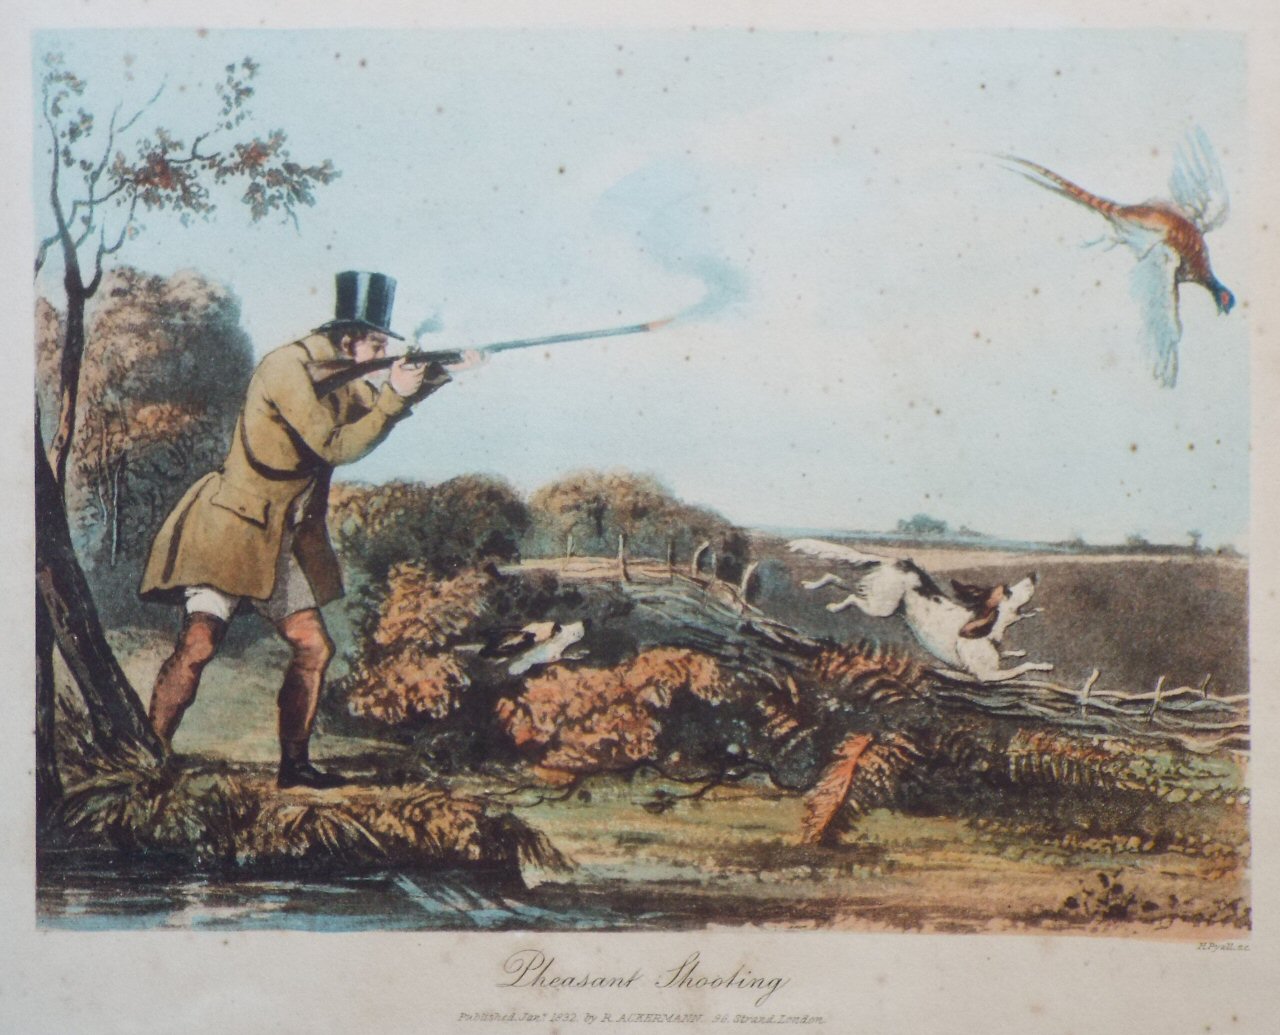 Aquatint - Pheasant Shooting - Pyall